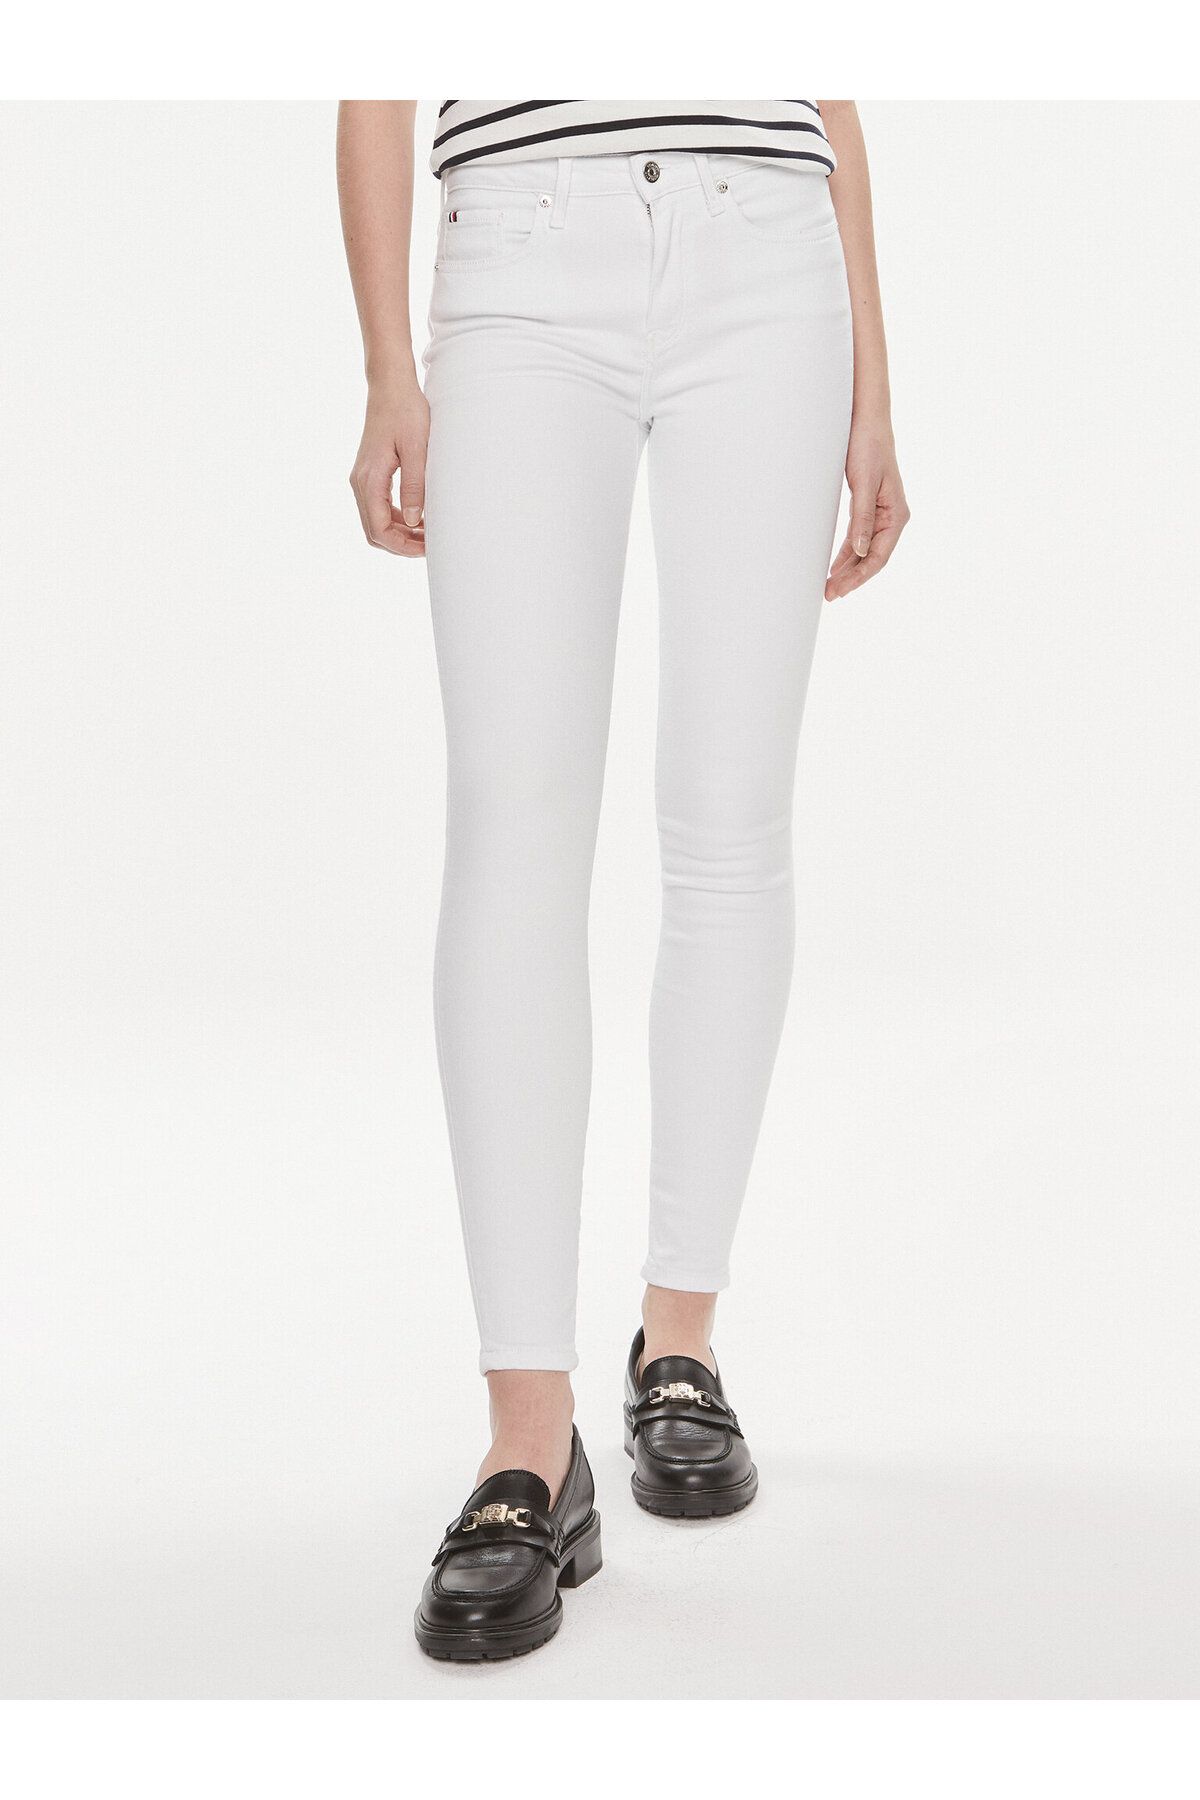 Tommy Hilfiger Kadın Denim Kumaş  Normal Bel Düz Model Beyaz Jeans WW0WW41295-YCF